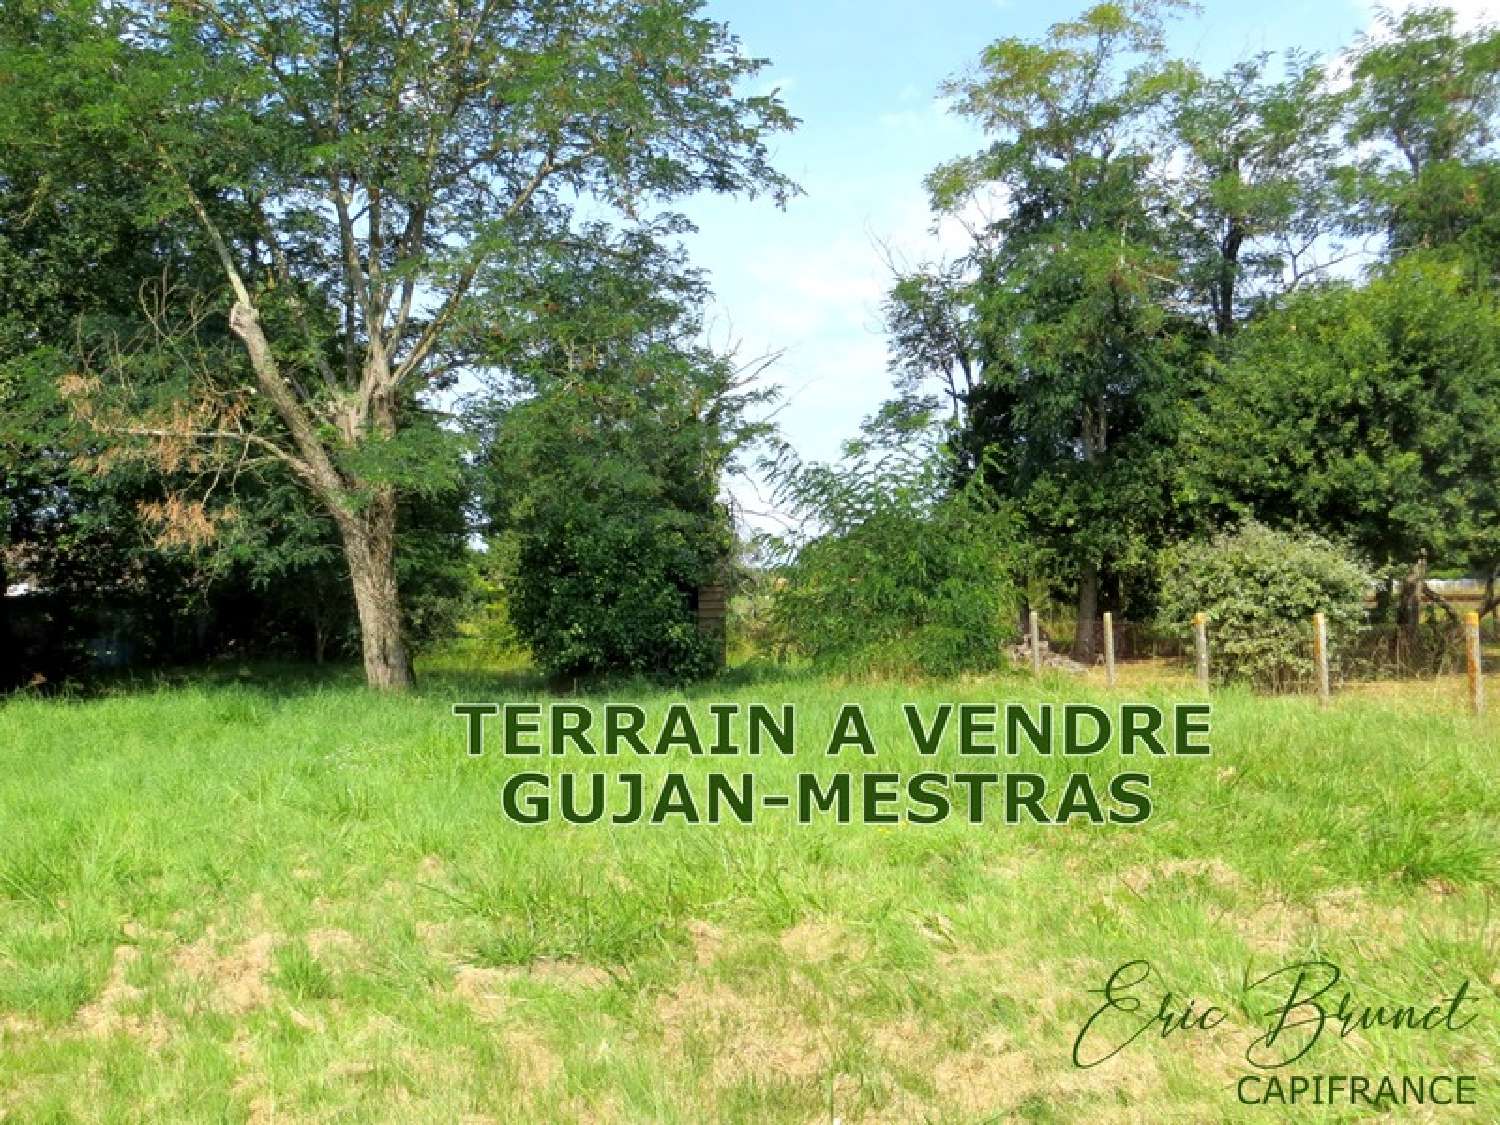  te koop terrein Gujan-Mestras Gironde 1